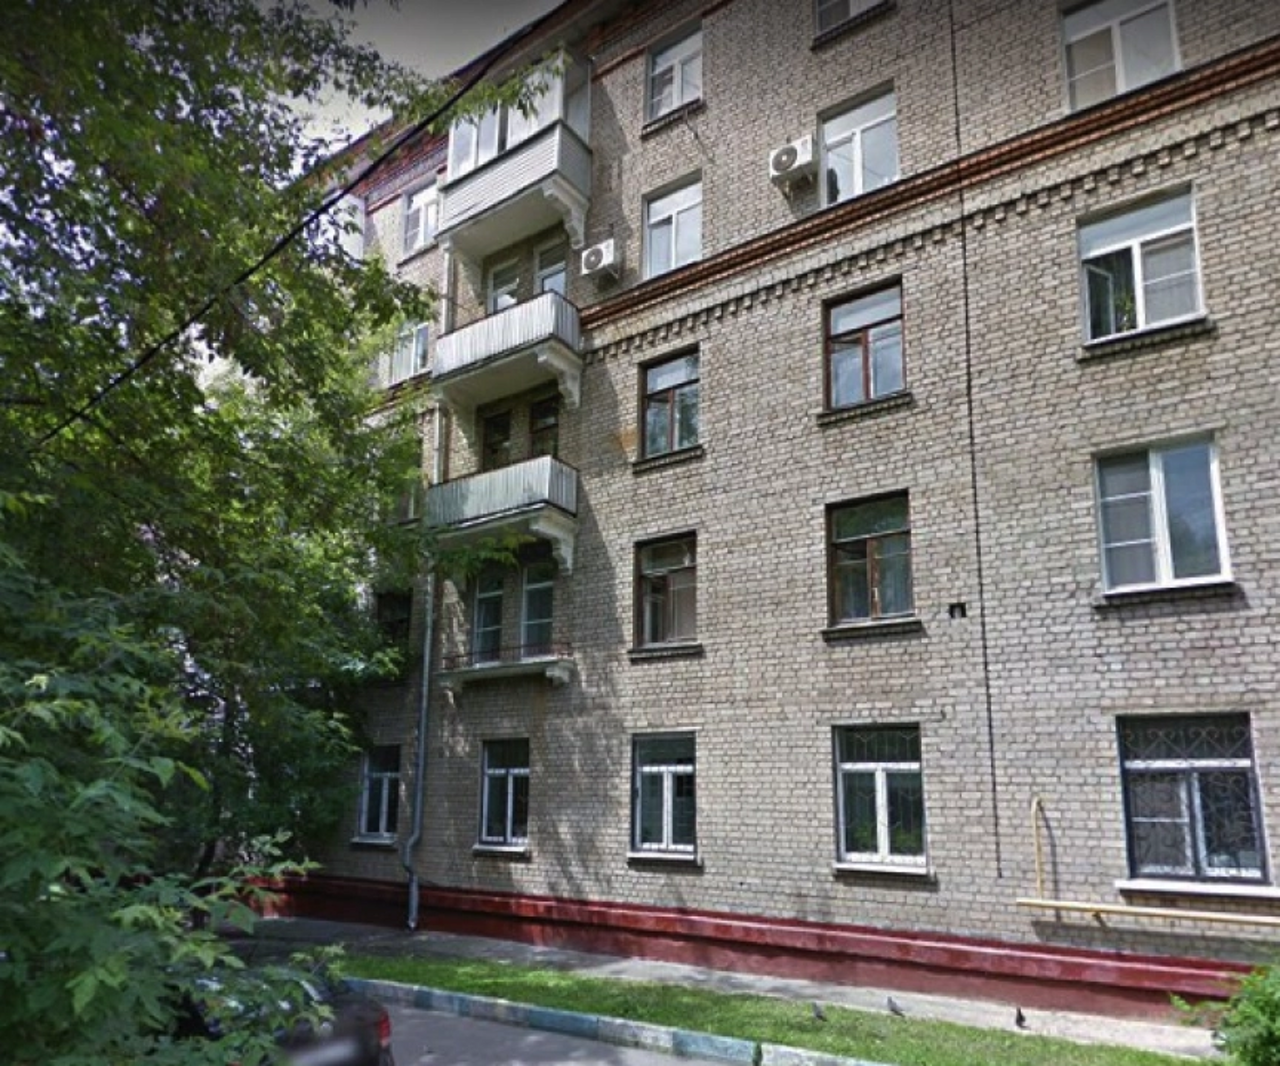 Продам квартиру в Москве по адресу Каширское шоссе, 56к2, площадь 17 квм Недвижимость Москва (Россия)  Район отличается развитой социальной инфраструктурой, удобной транспортной доступностью до центра города и других районов столицы